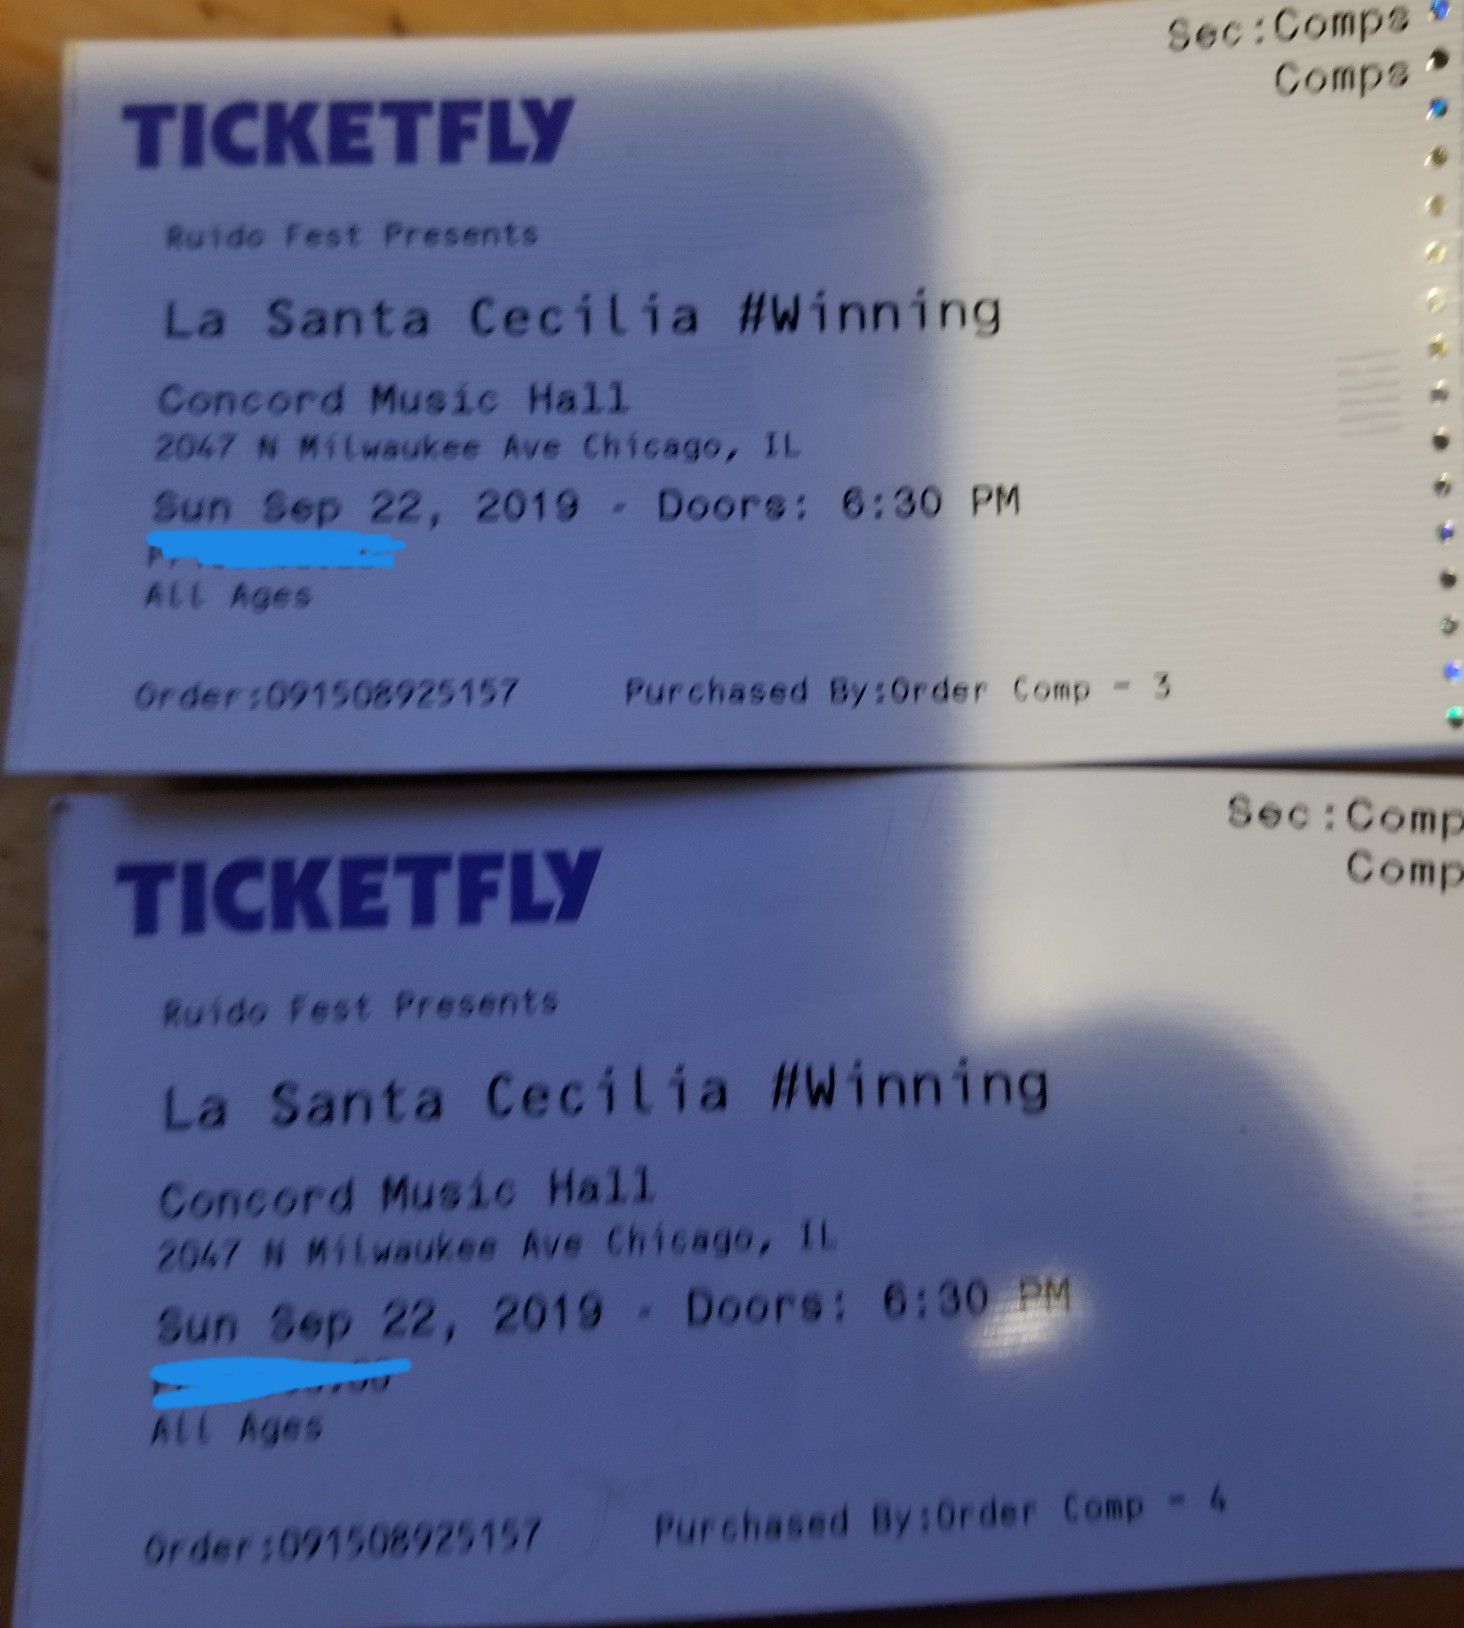 La Santa Cecilia Tickets